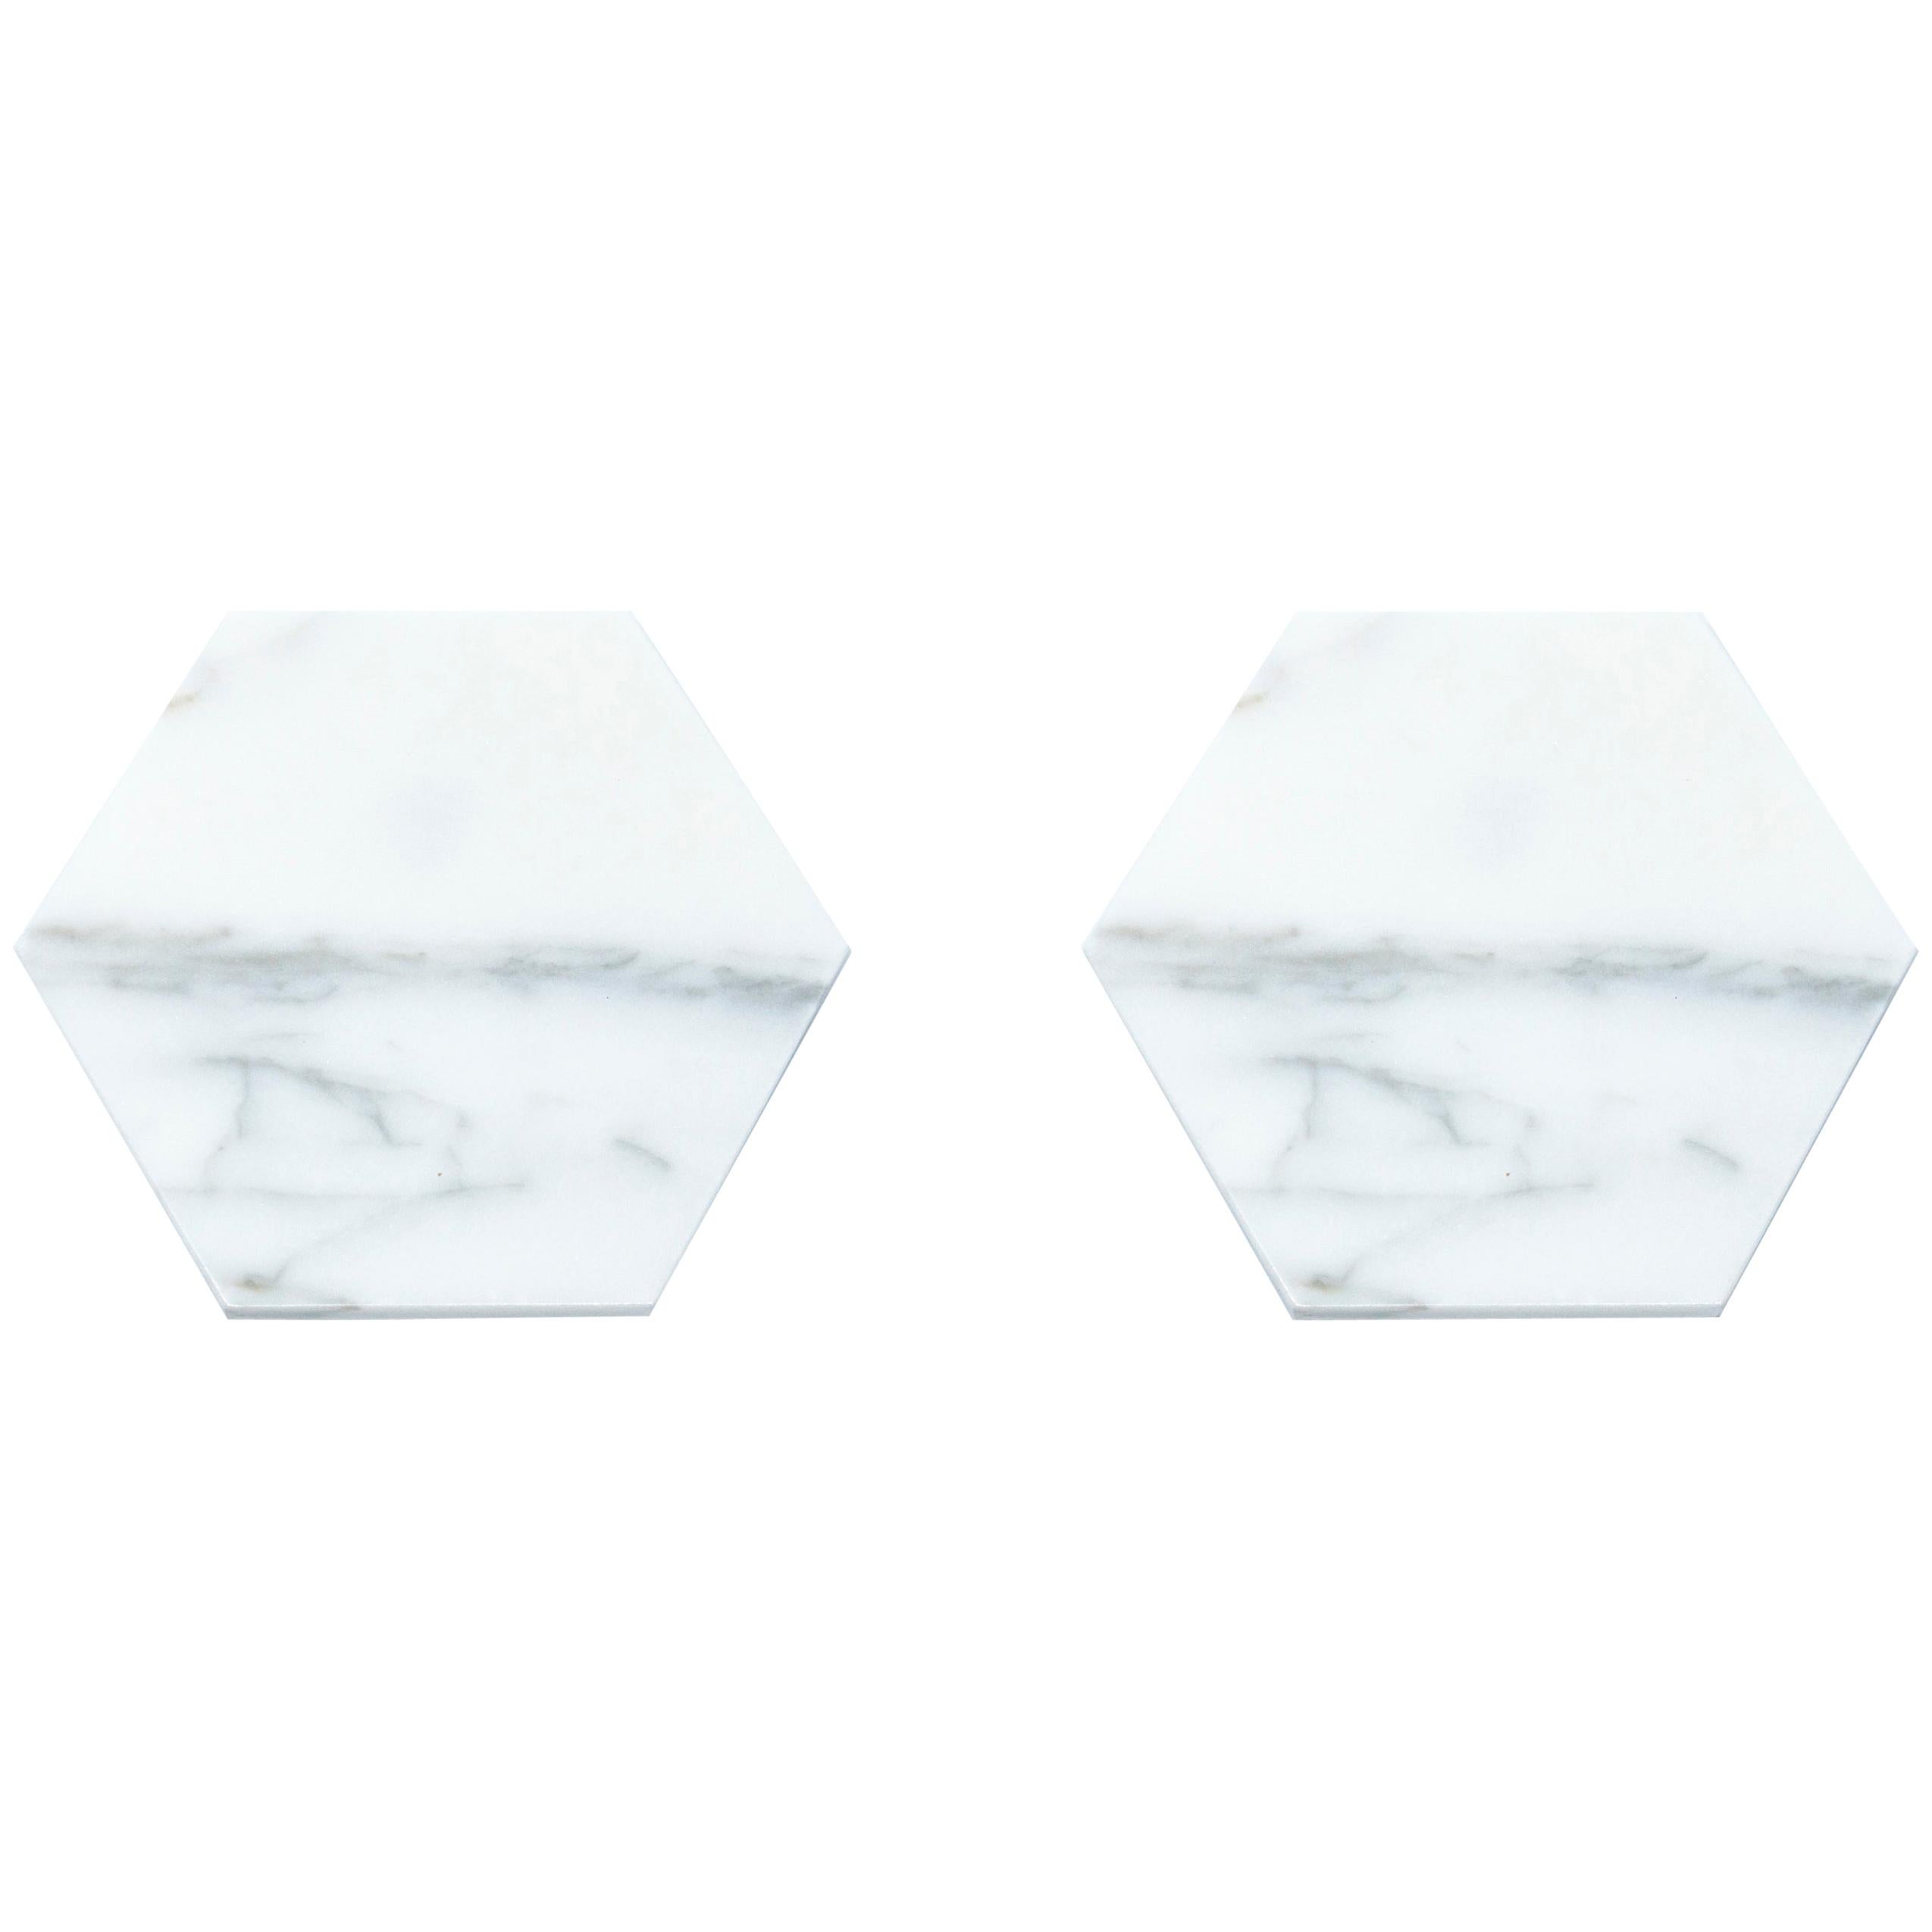 Handmade Set of 2 Hexagonal White Carrara Marble Coasters